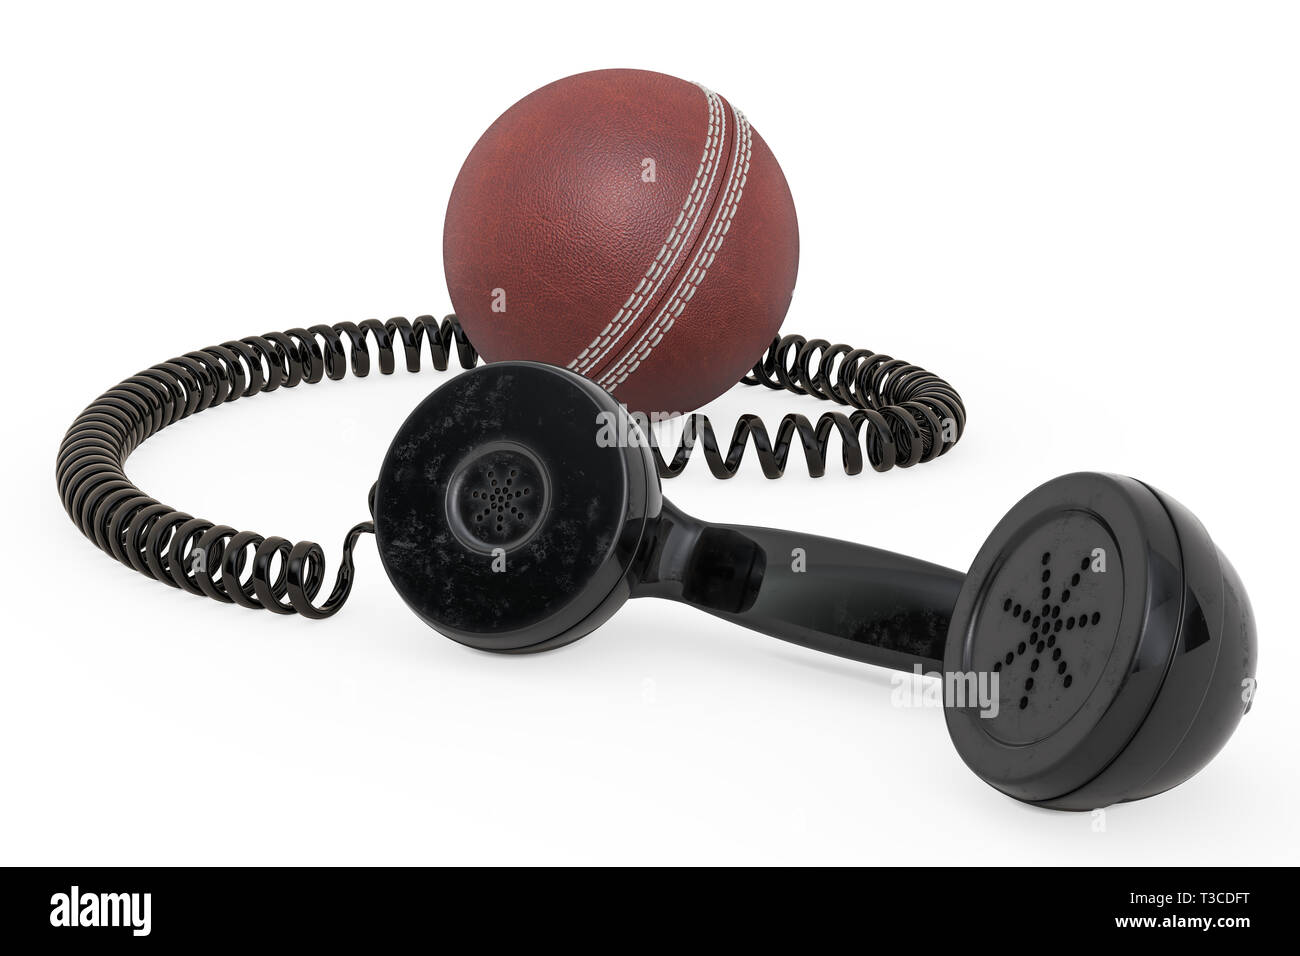 Ricevitore telefonico con sfera di cricket, rendering 3D isolati su sfondo bianco Foto Stock